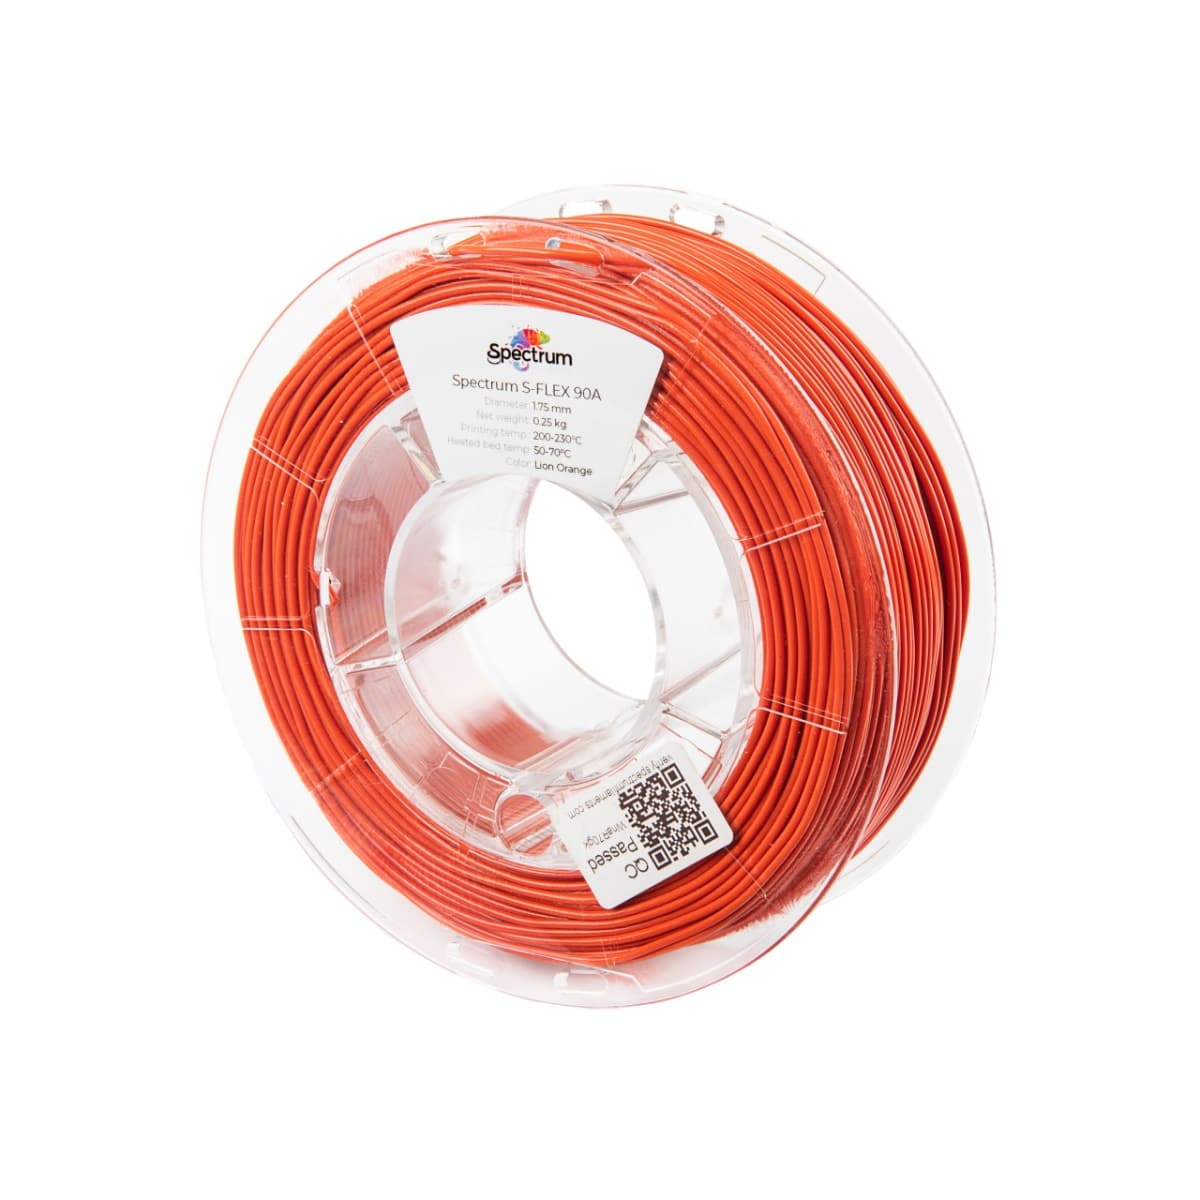 Køb Spectrum Filaments - S-Flex 90A - 1.75mm - Lion Orange - 0.25kg - Pris 130.00 kr.